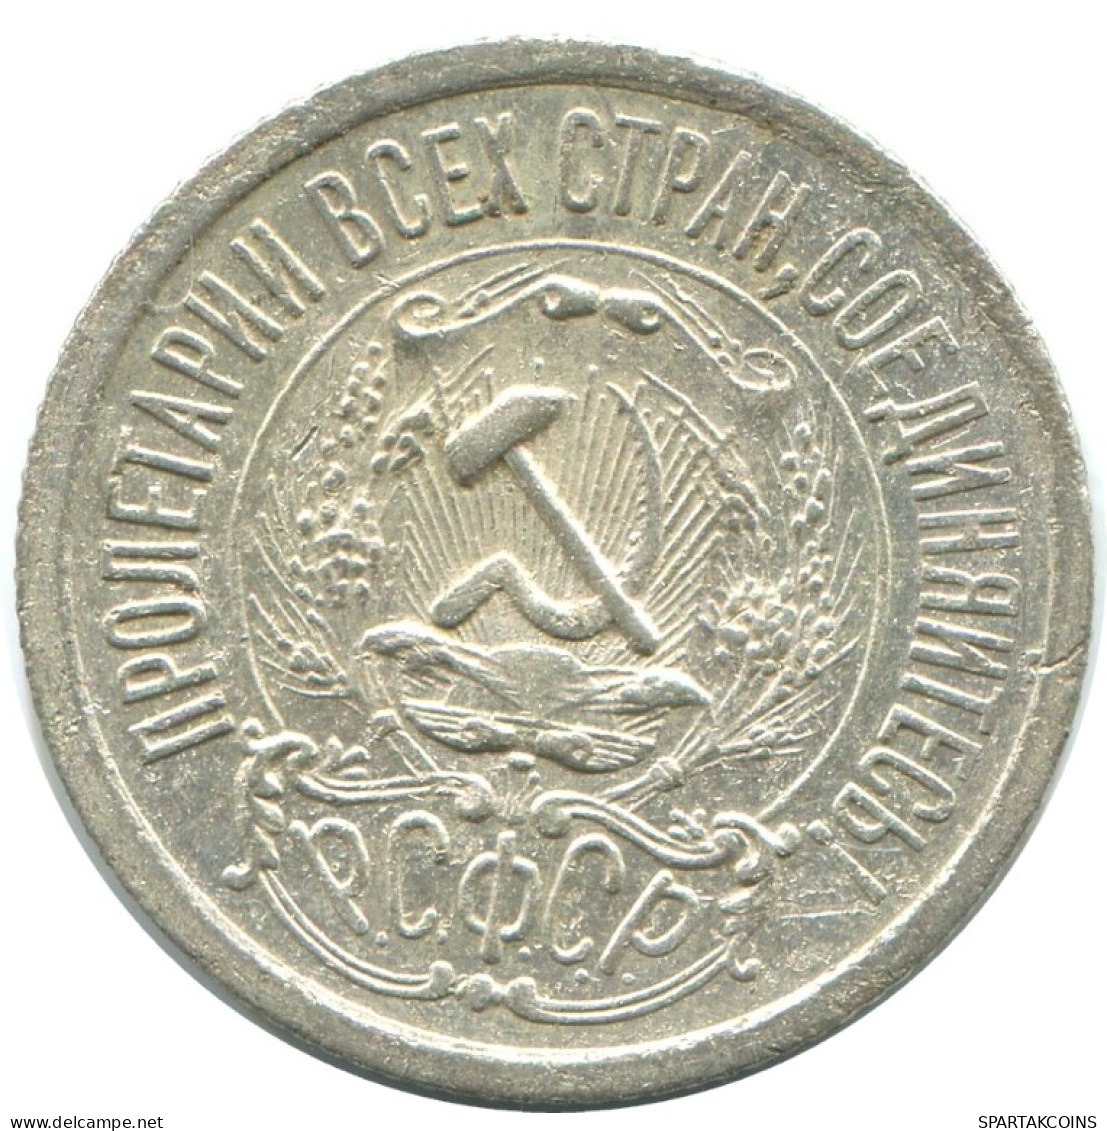 15 KOPEKS 1923 RUSSIA RSFSR SILVER Coin HIGH GRADE #AF129.4.U.A - Rusland